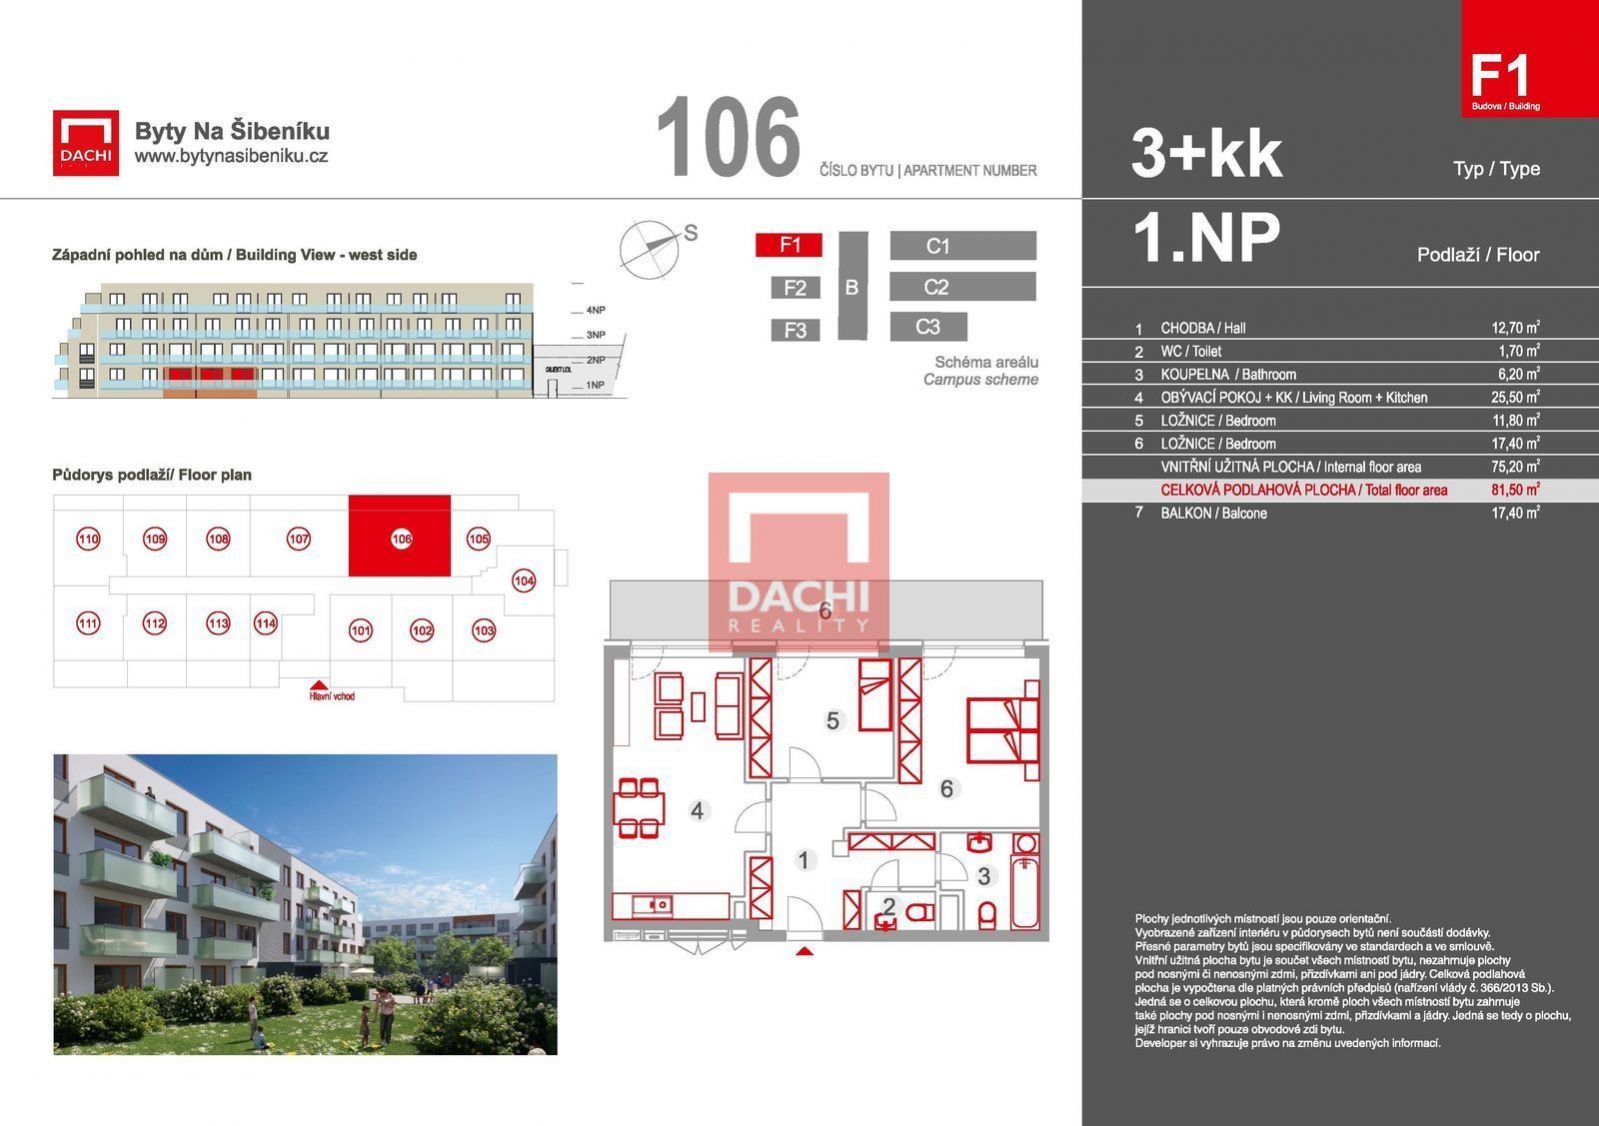 Prodej novostavby bytu F1.106  3+kk  81,50m s balkonem 17,4m, Olomouc, Byty Na Šibeníku II.etapa, obrázek č. 3